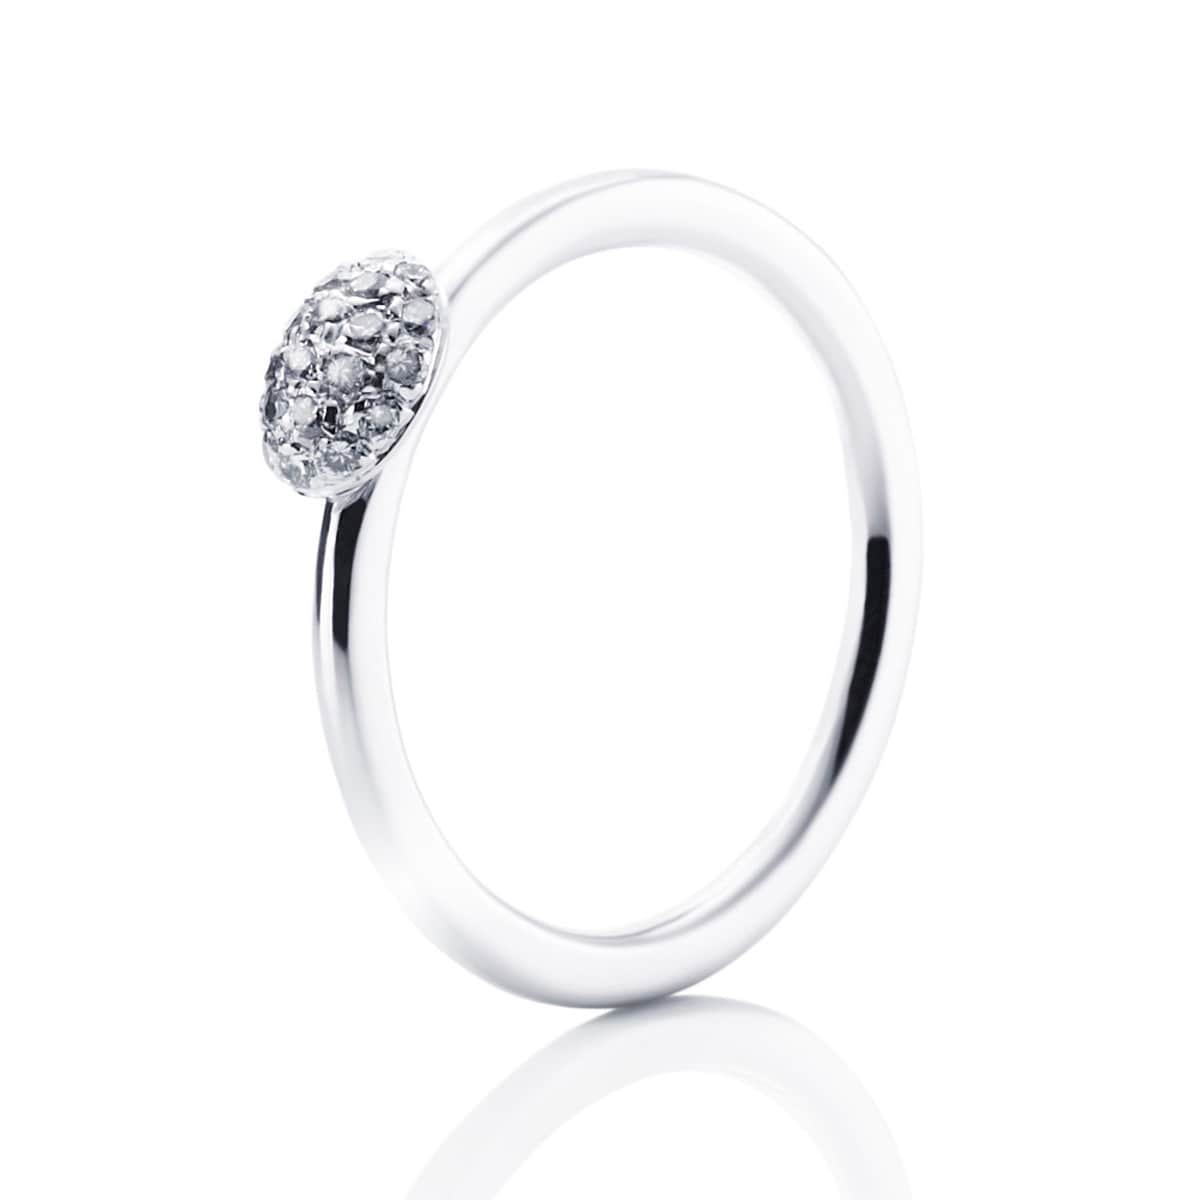 Efva_Attling_smycken_Love Bead Ring - Diamonds 13-102-00440(1)_hos_Jarl_Sandin